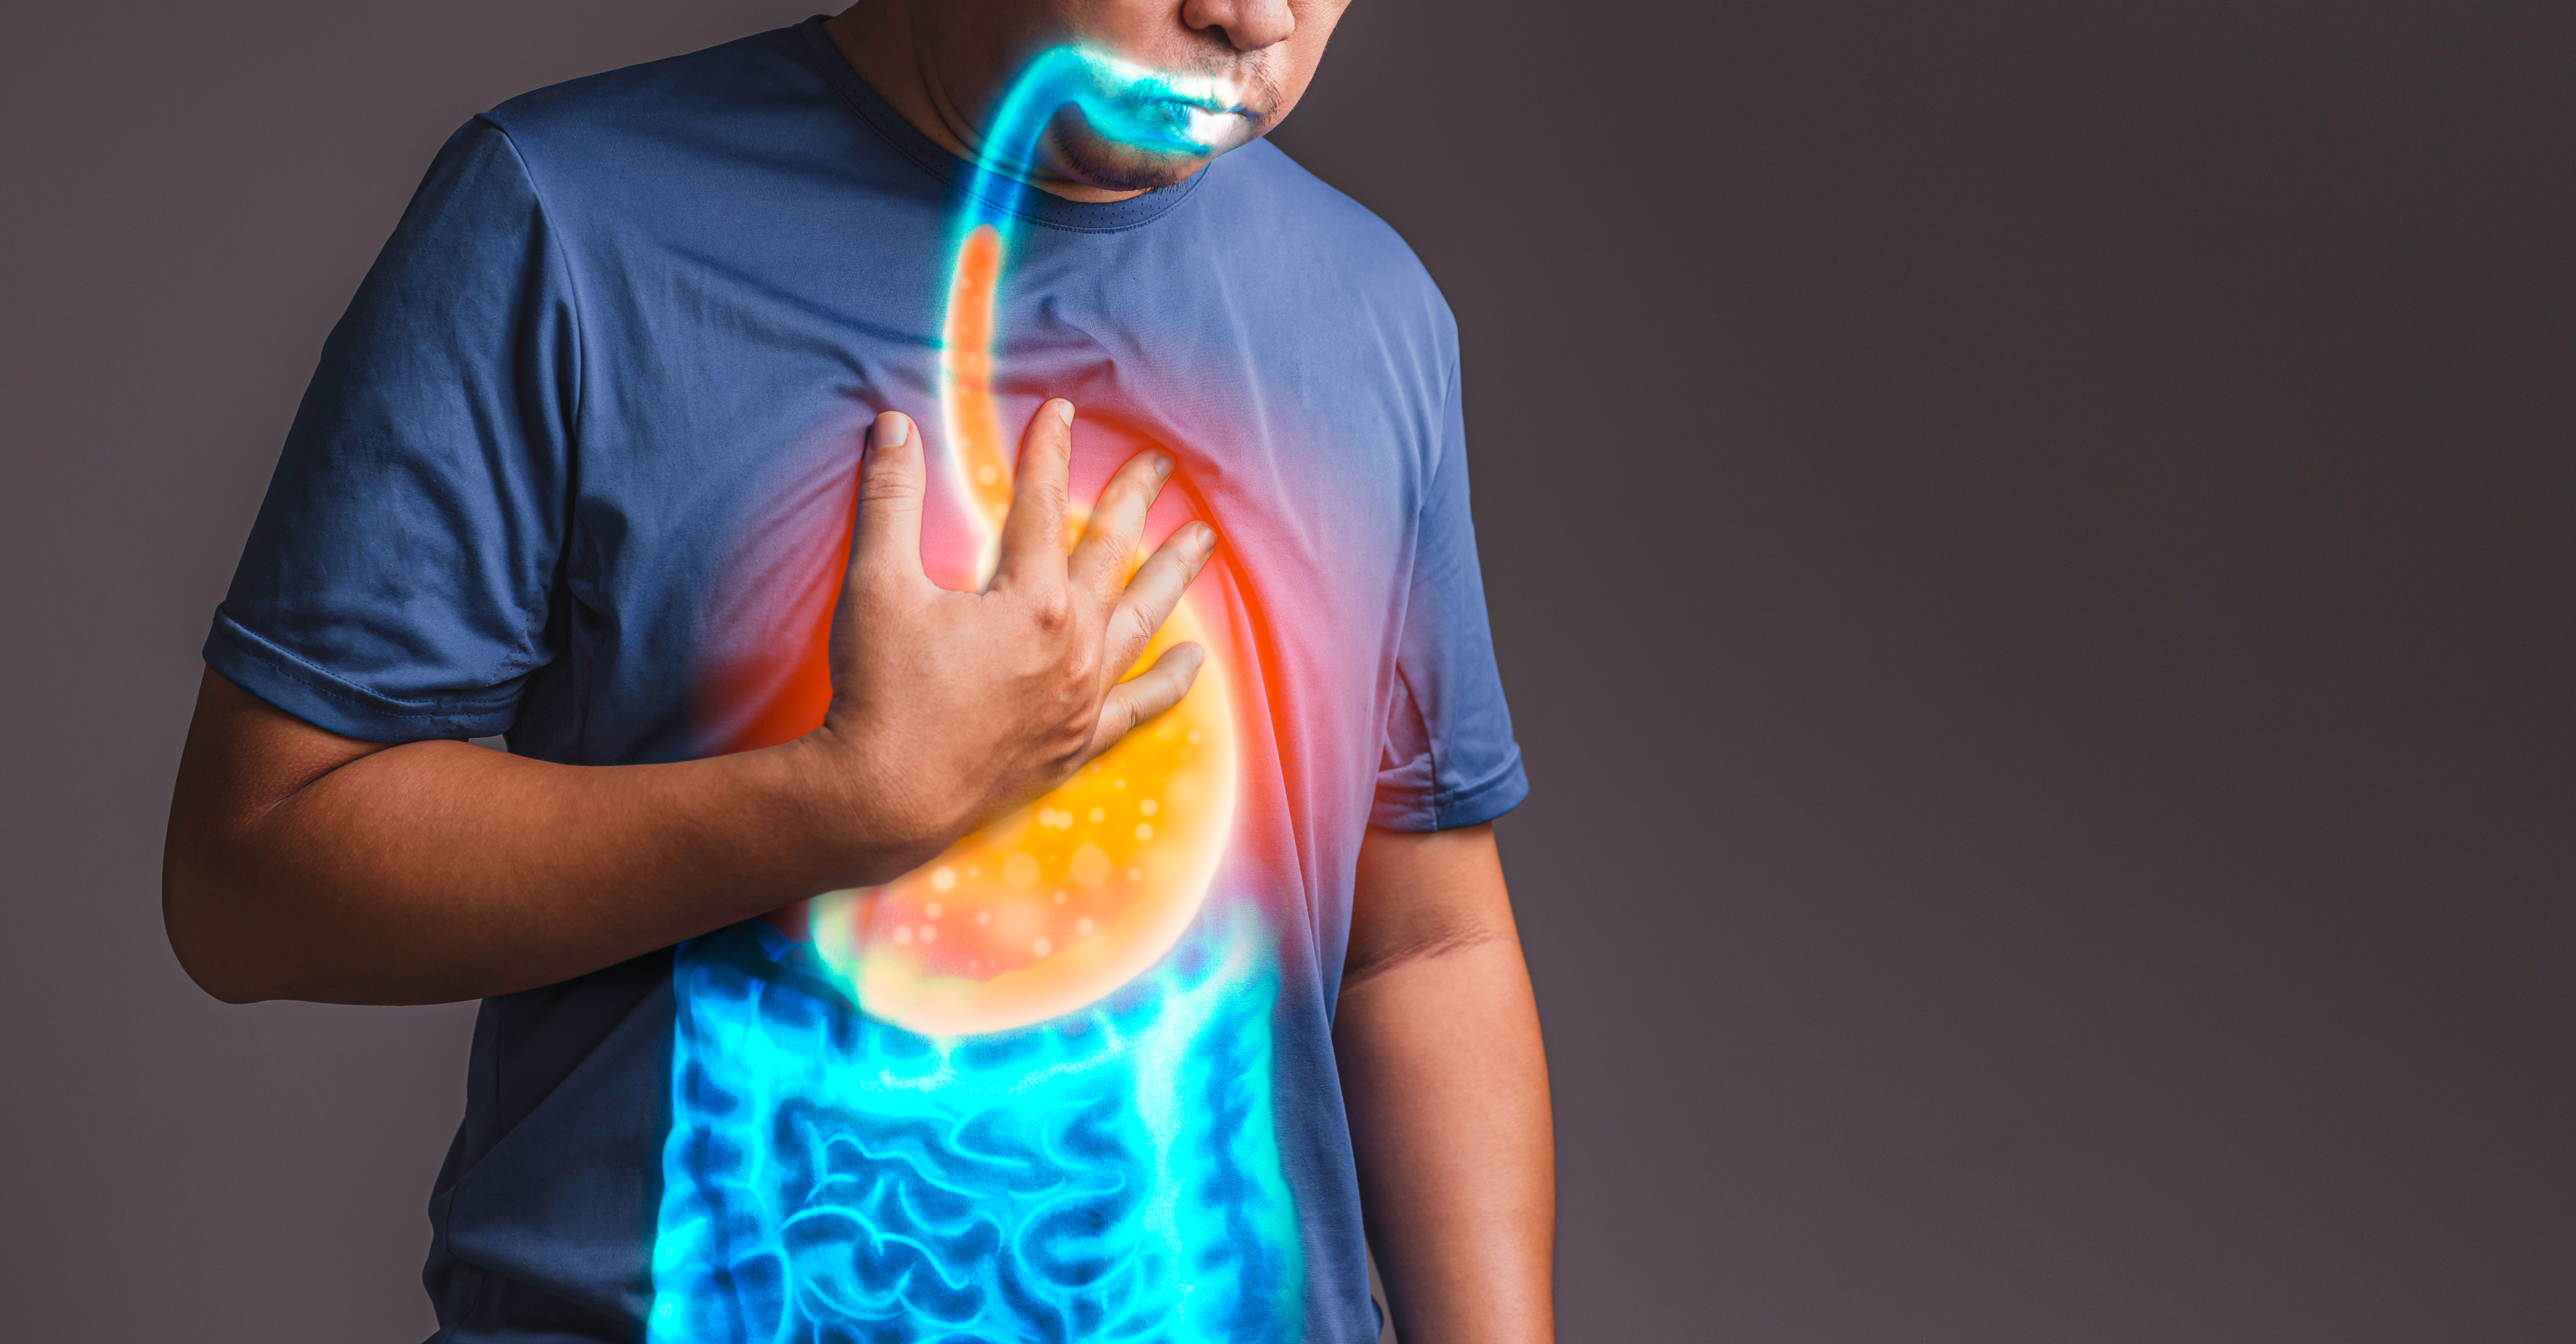 Le reflux gastro-œsophagien est un symptôme de l'œsophagite à éosinophiles. © Suttipun, Adobe Stock